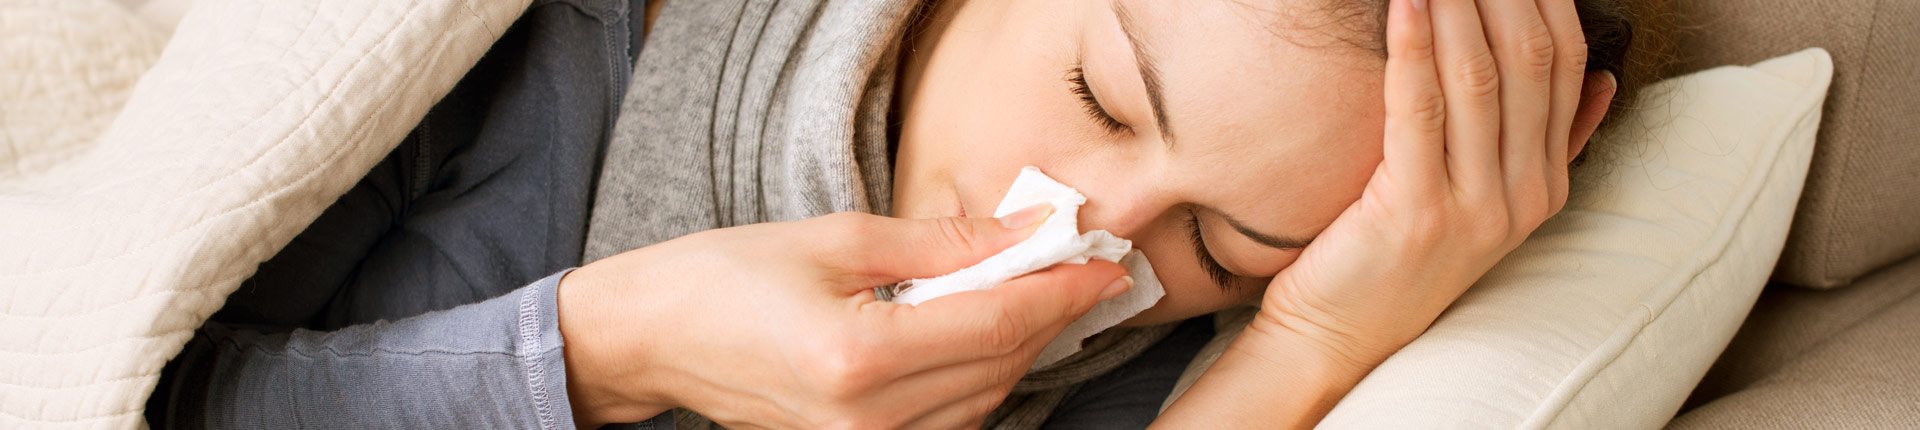 Często łapiesz infekcje? Częste przeziębienia – przyczyny i zapobieganie